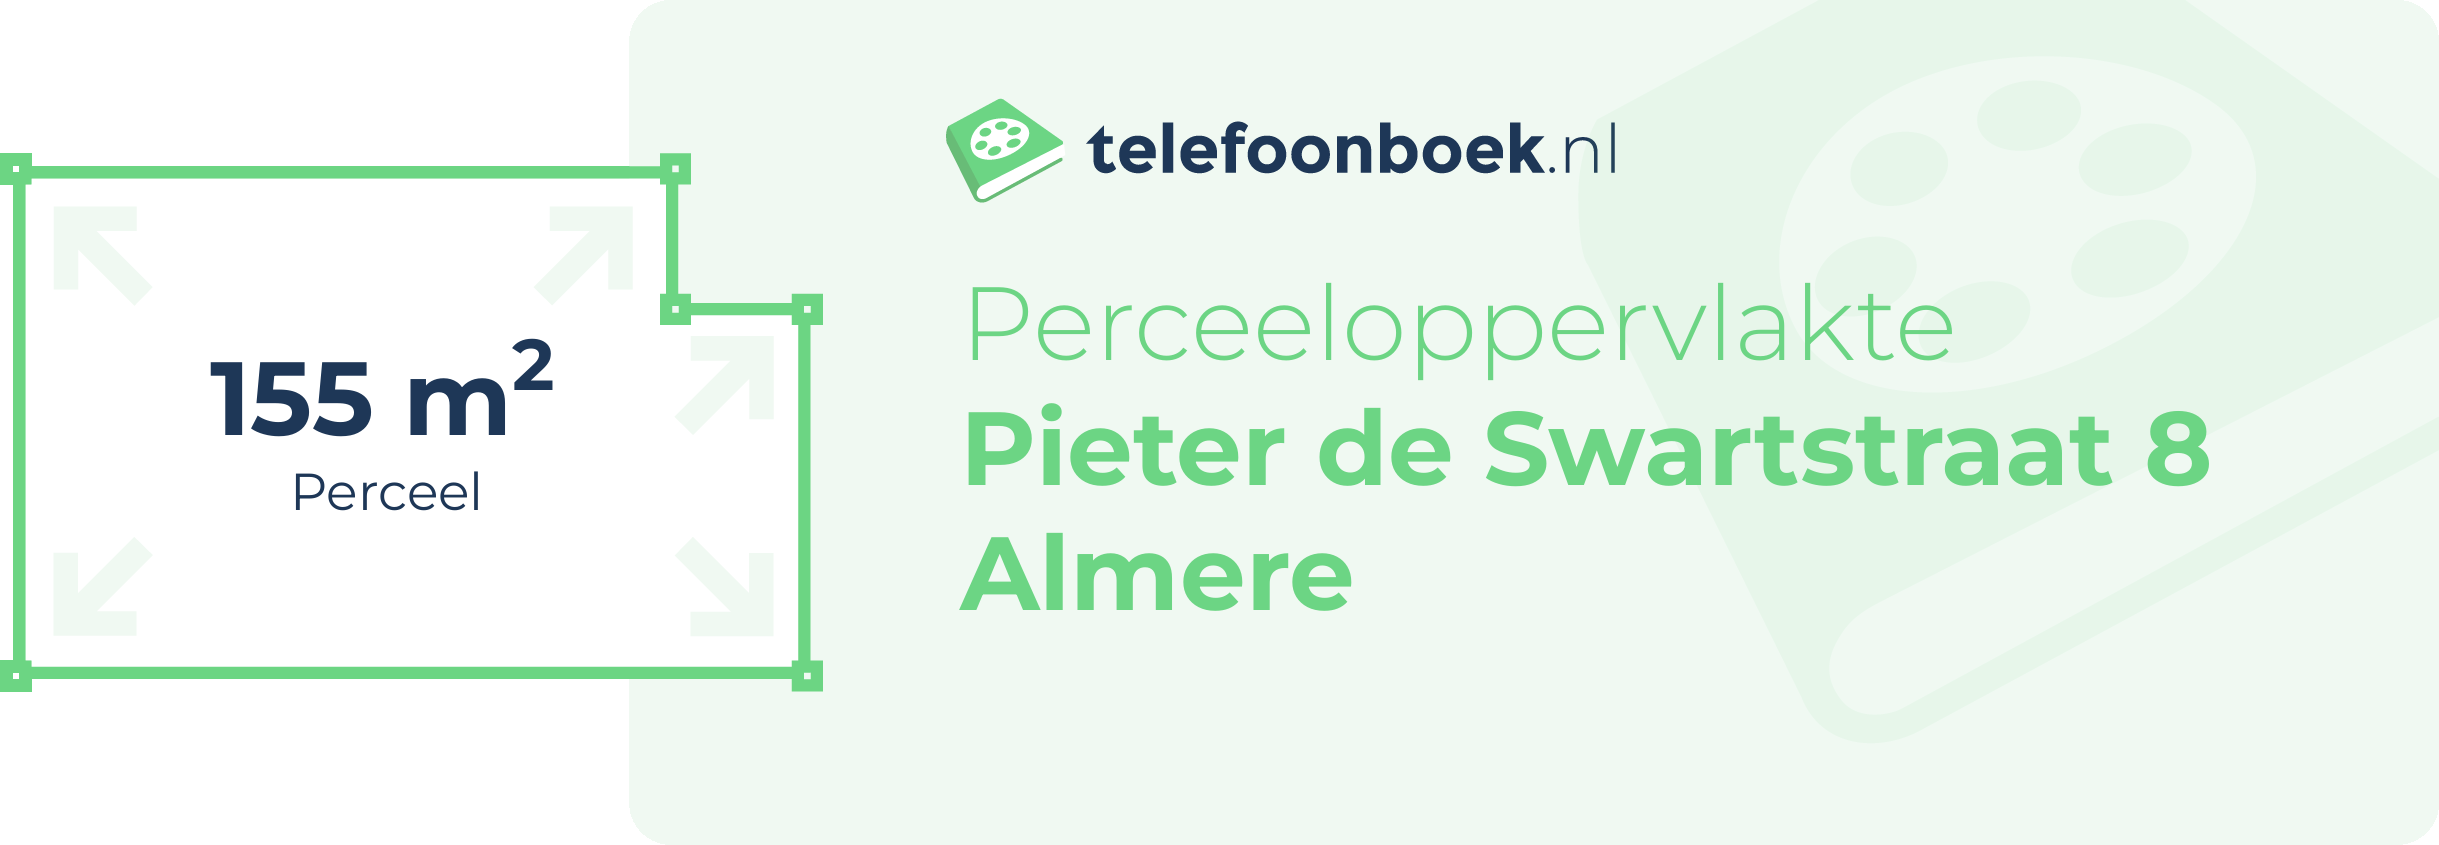 Perceeloppervlakte Pieter De Swartstraat 8 Almere